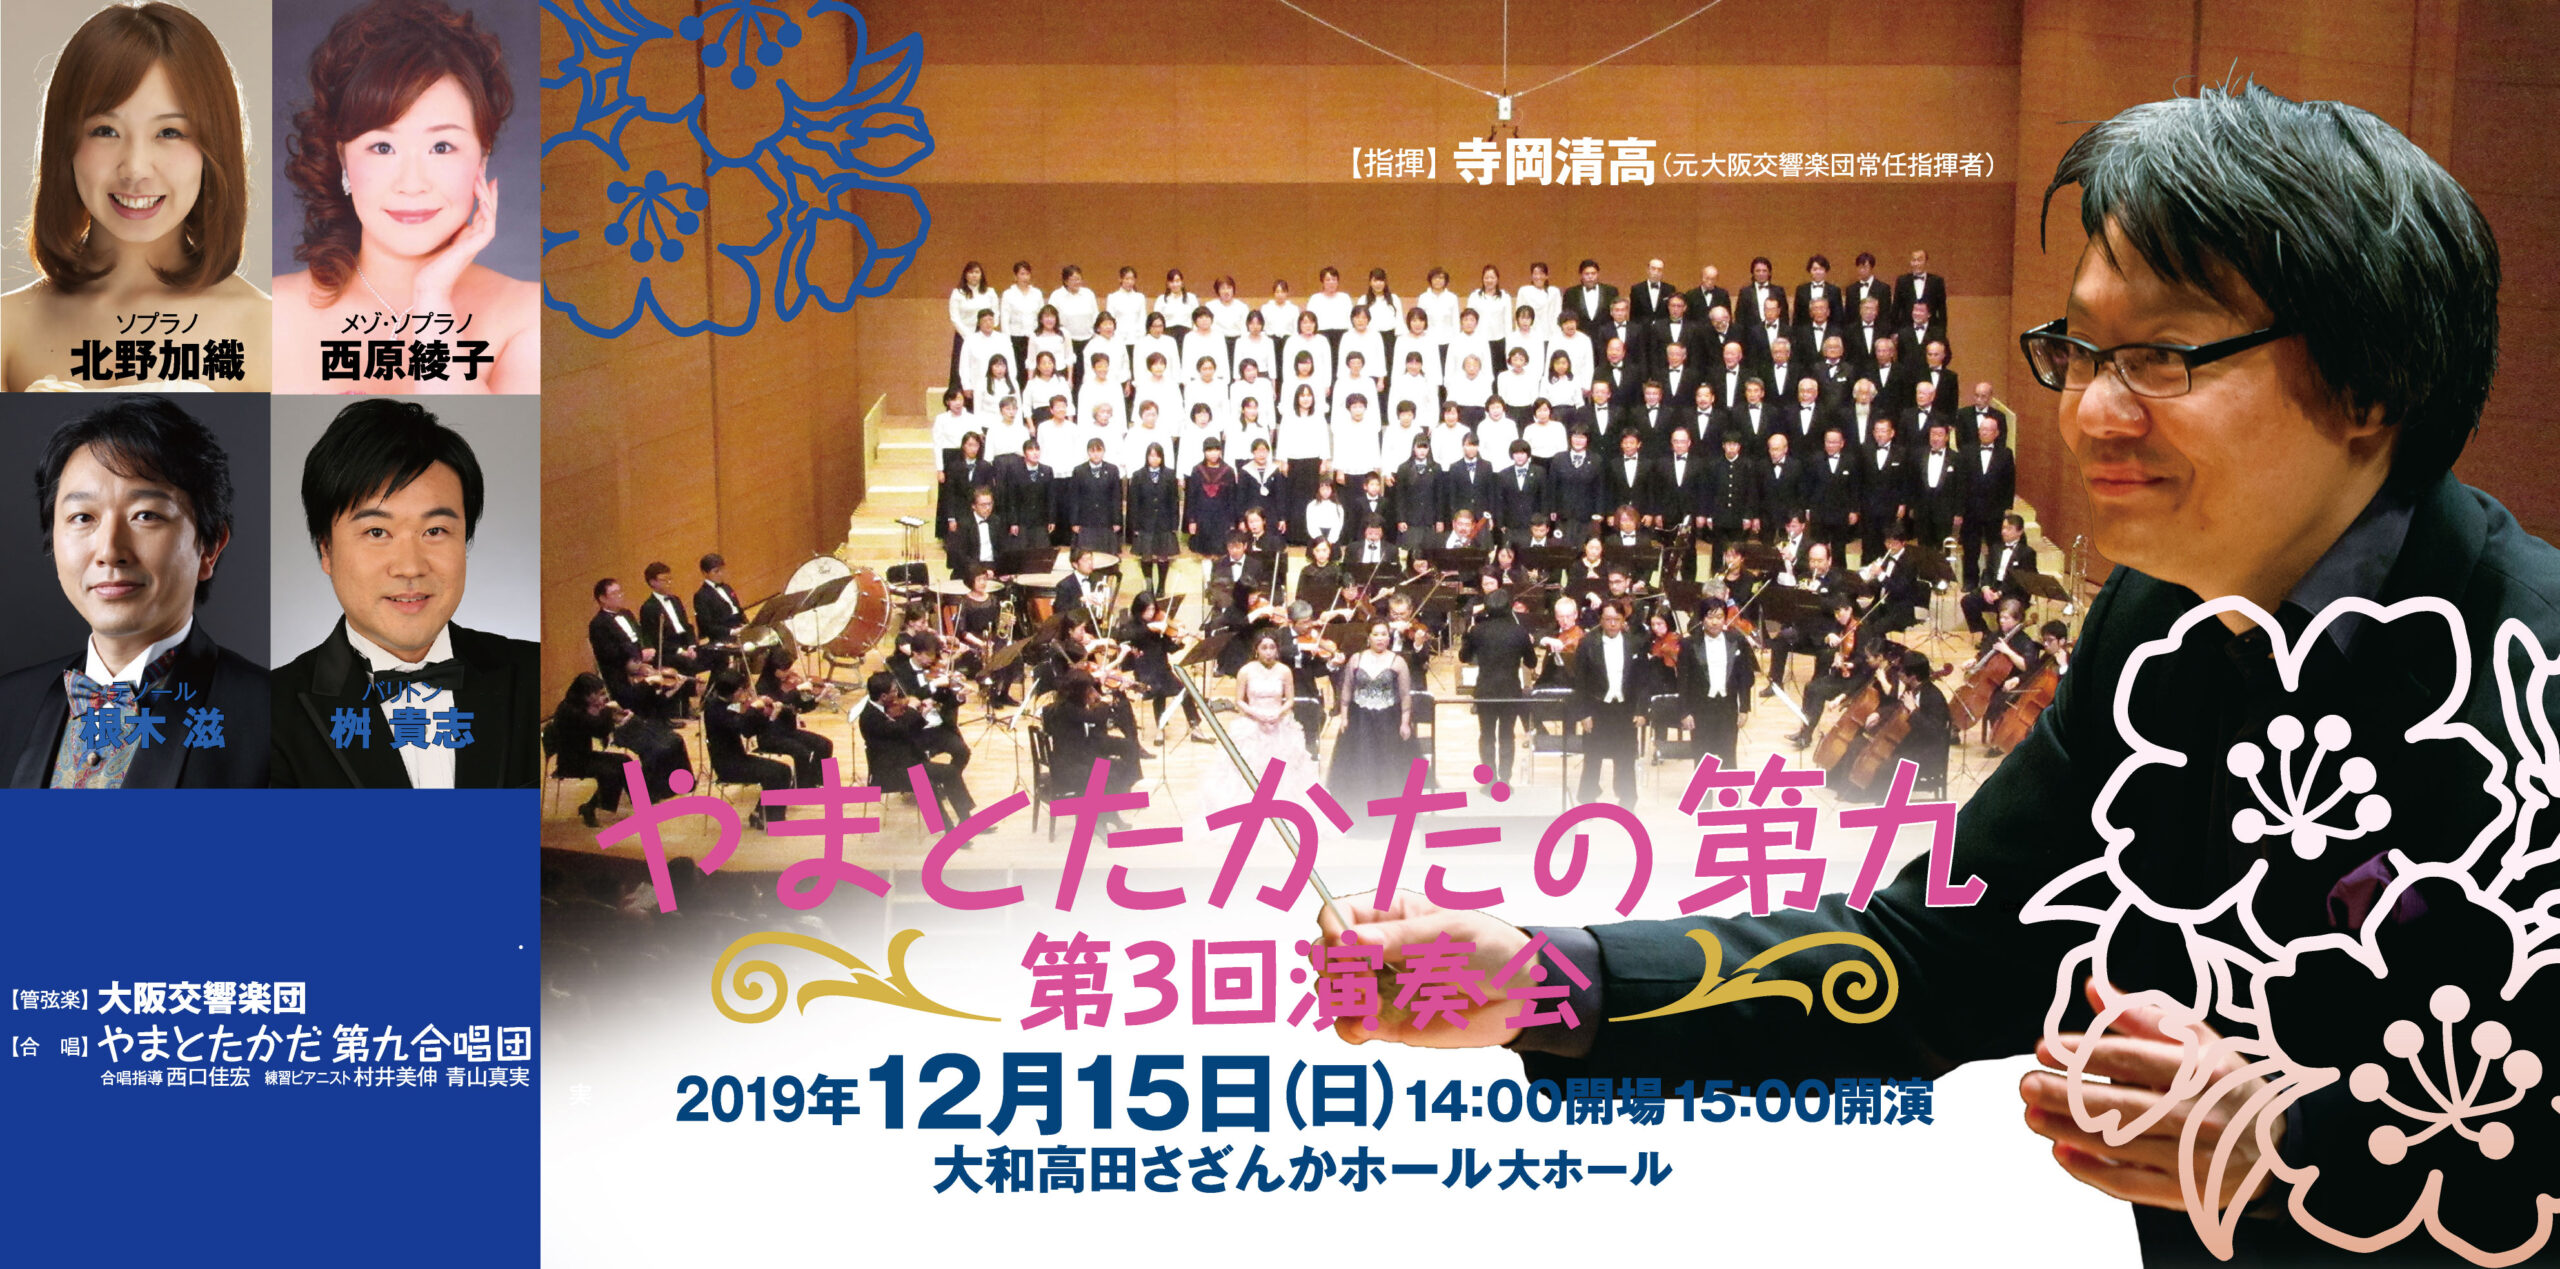 2019年、イベント、奈良県、大和高田市、12月、コンサート、ライブ、大和高田さざんかホール、観賞、やまとたかだの第九。